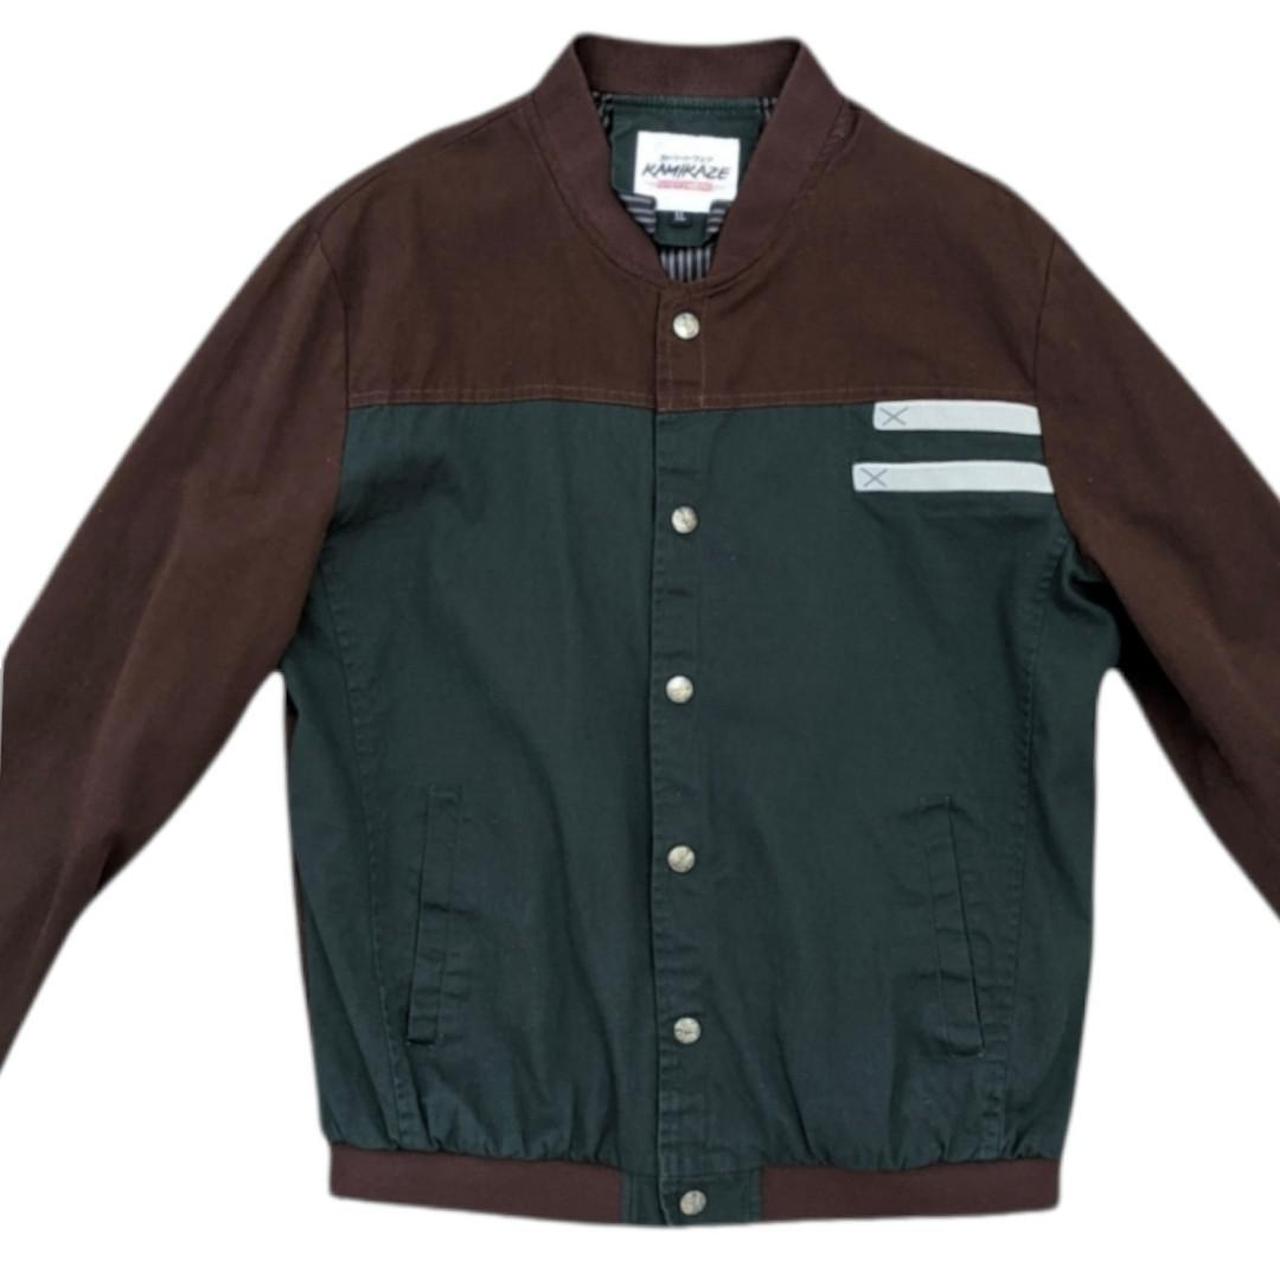 Product Image 3 - Men's Kamazaki Streetwear jacket size